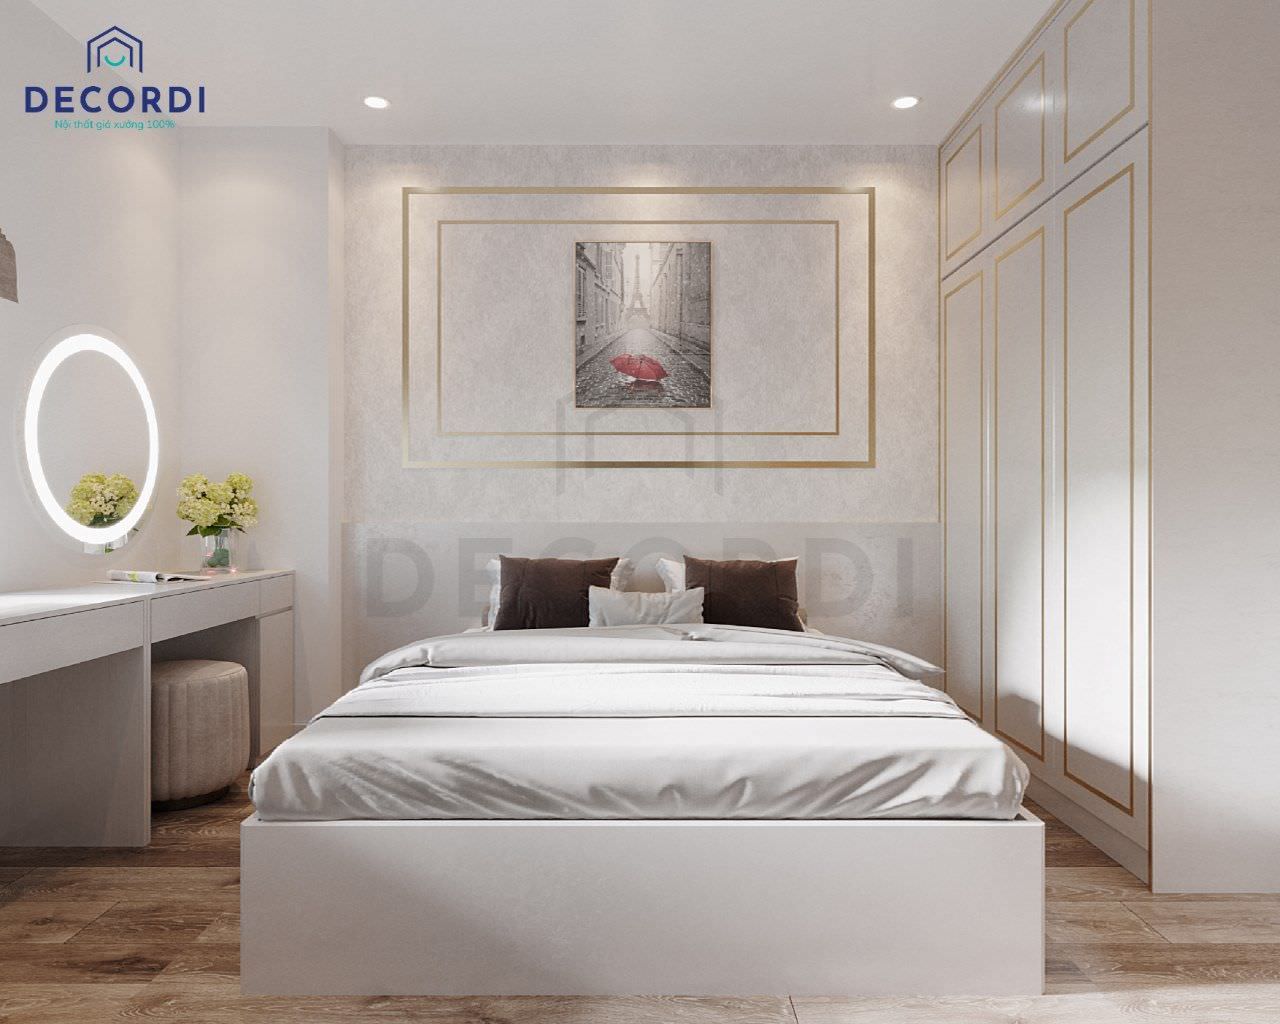 Thiết kế phòng ngủ nhỏ đơn giản nhưng vô cùng sang trọng với tông màu trắng tinh tế